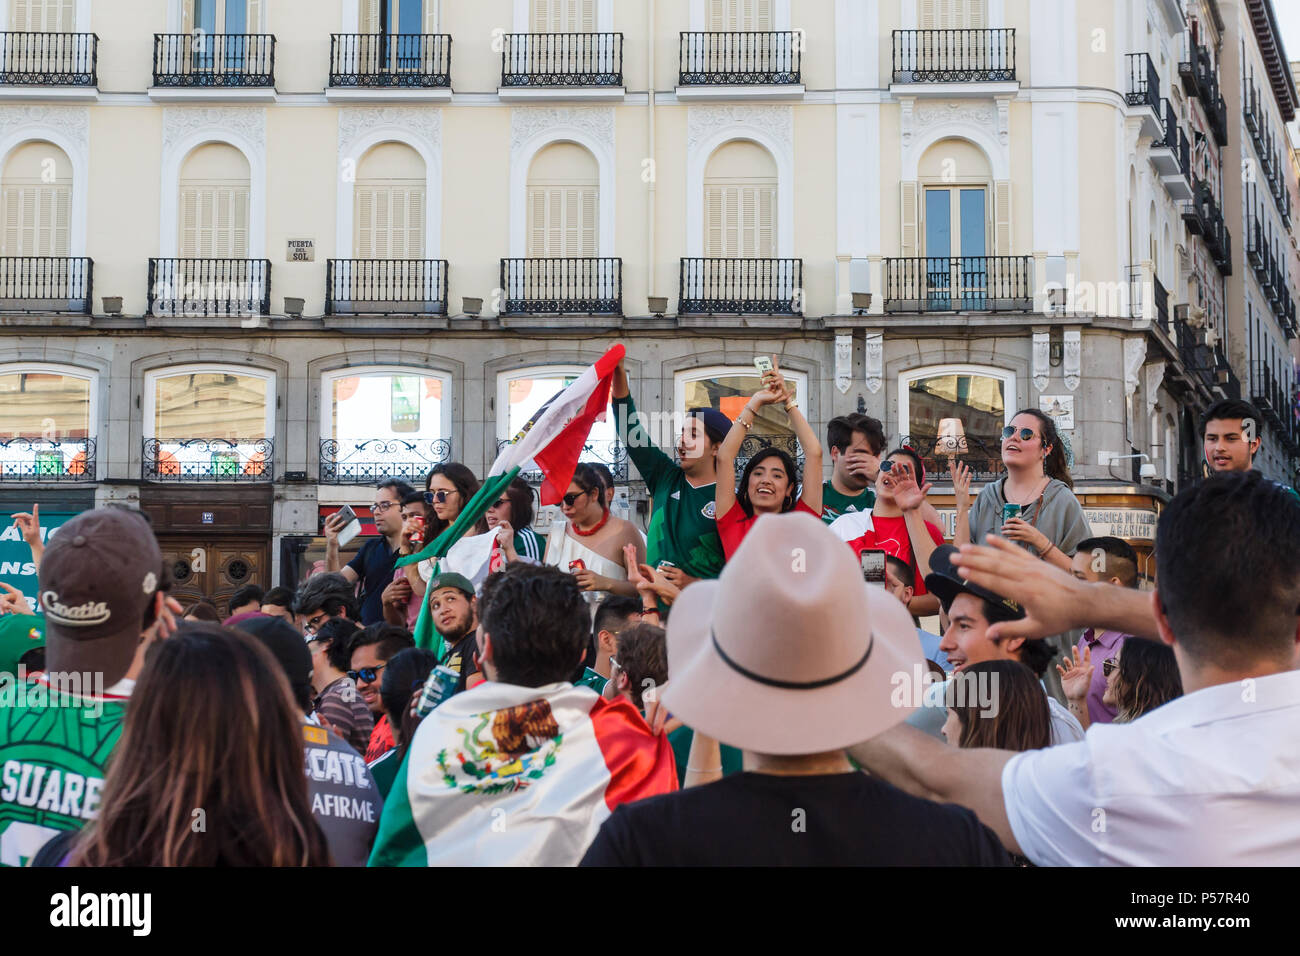 Madrid, Spanien - 17. Juni 2018: Die mexikanische Fußball-Fans feiern 1:0-Sieg über Deutschland an der Plaza del Sol Stockfoto